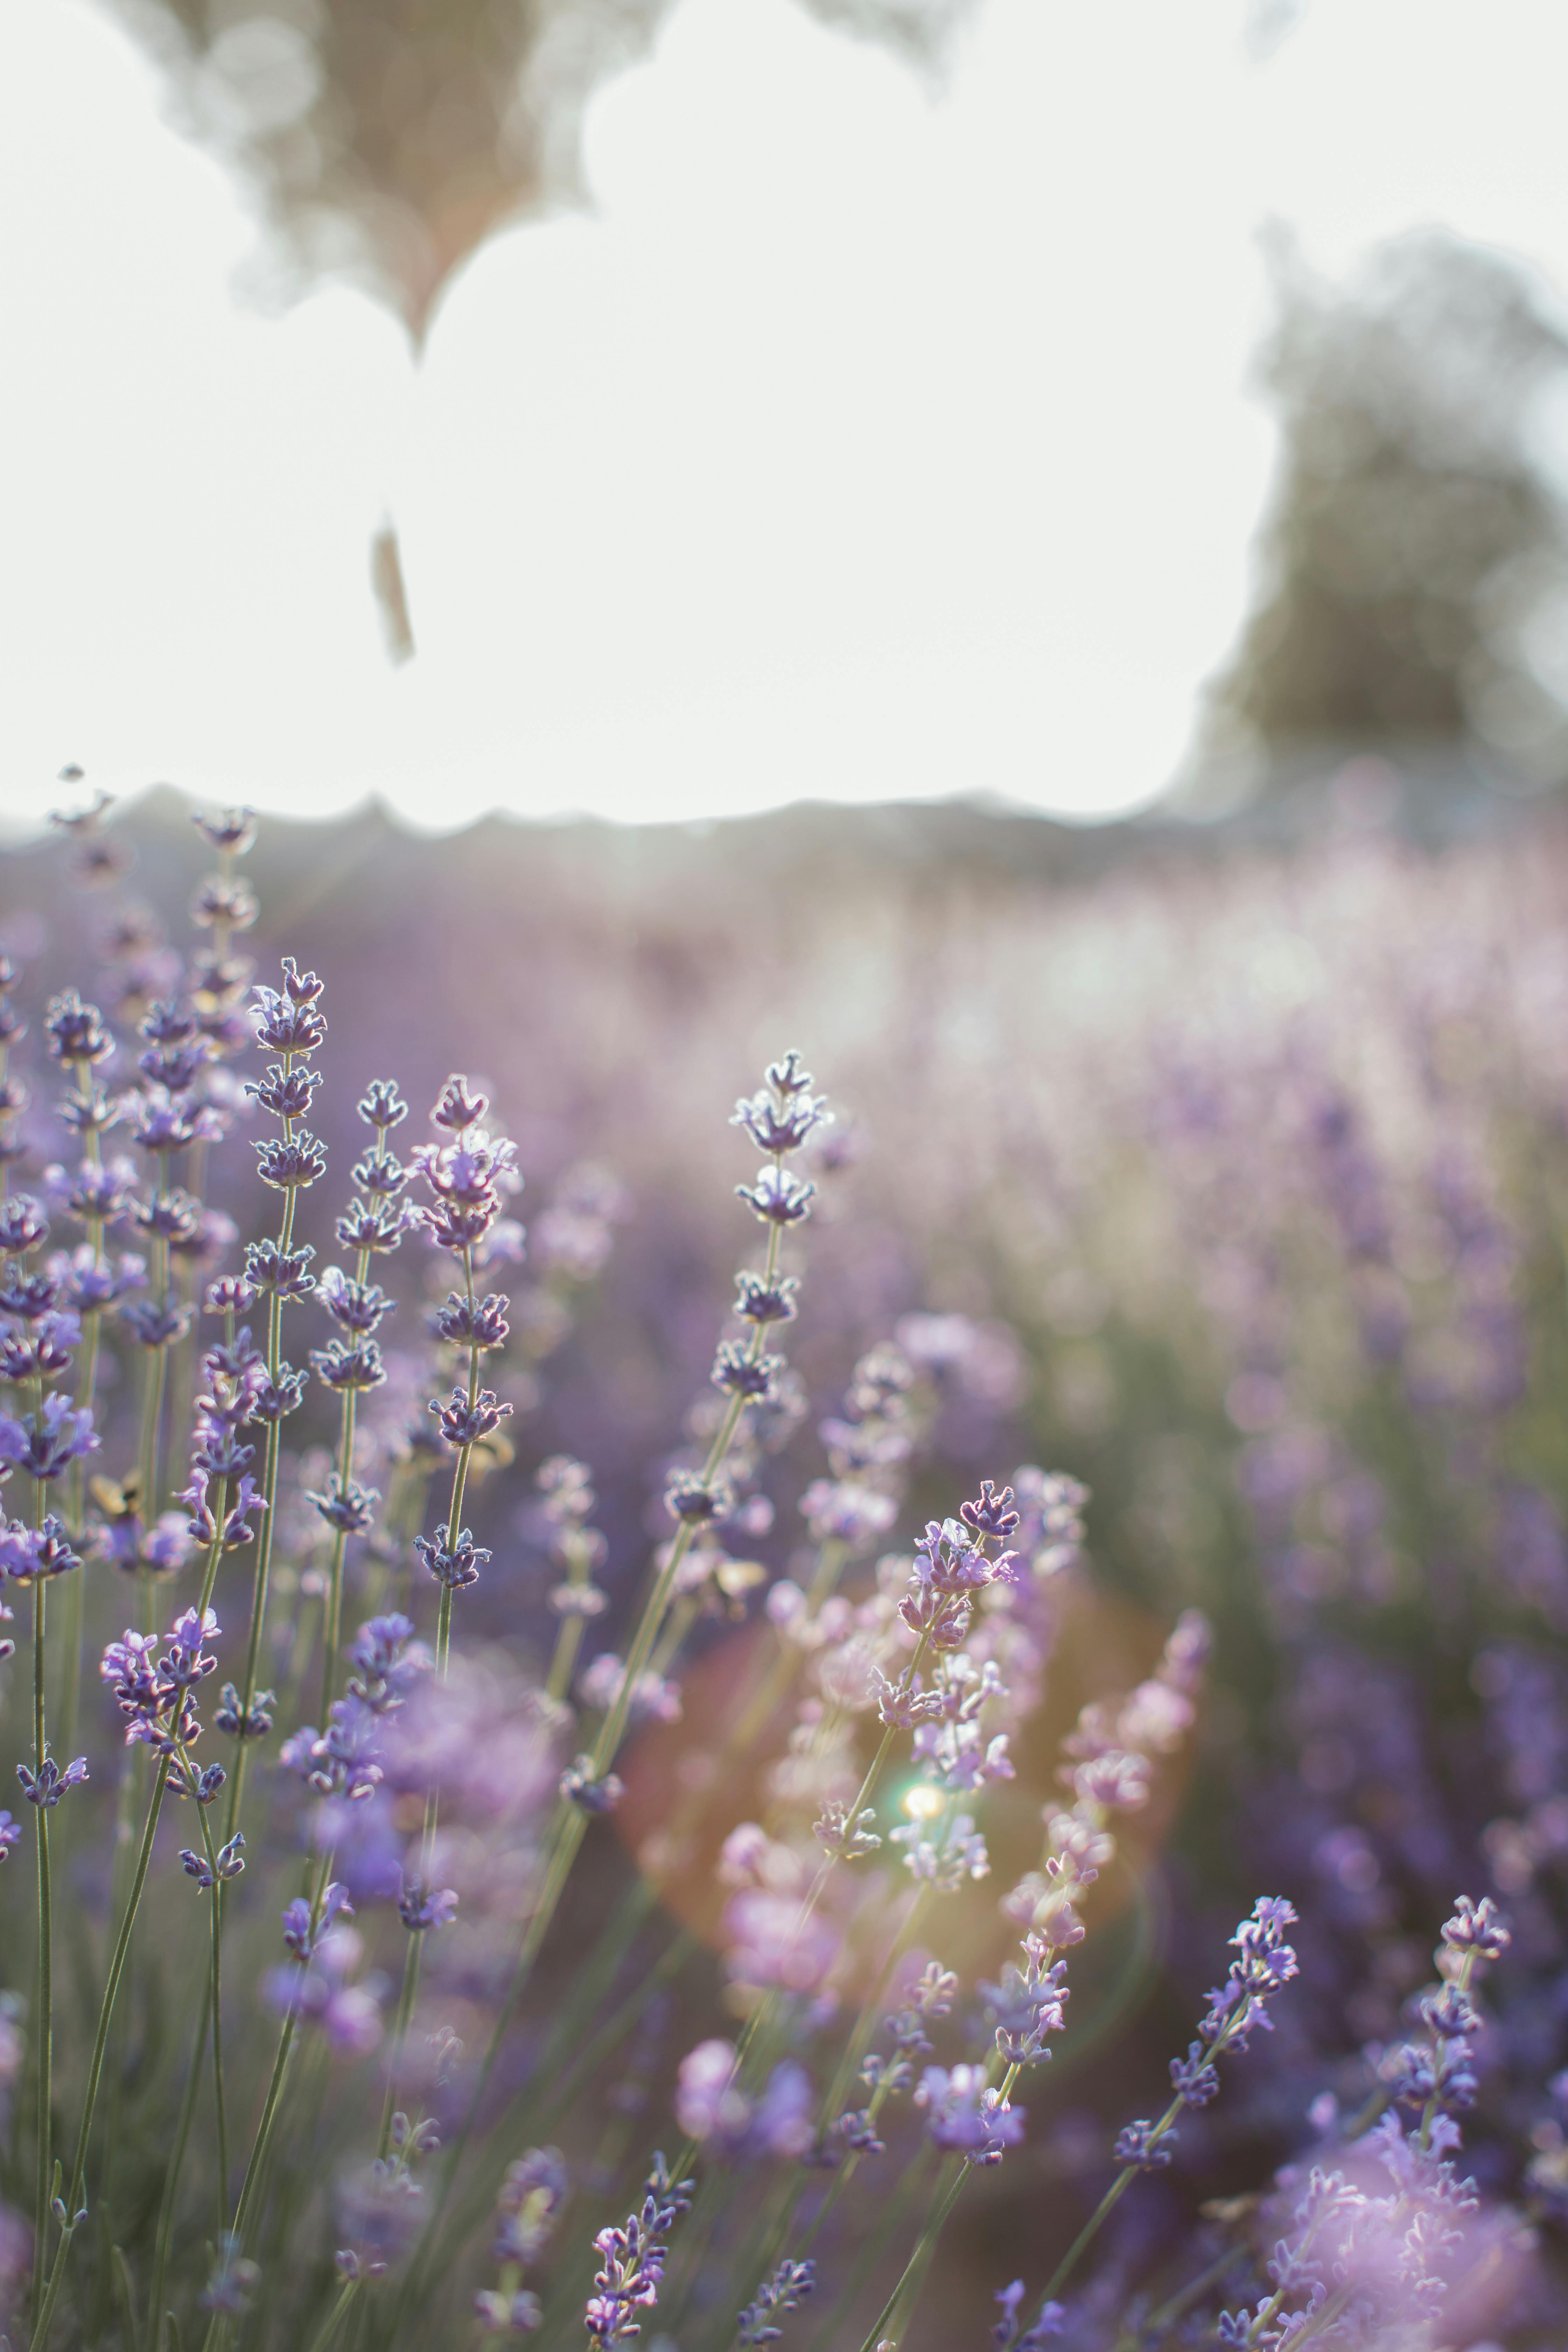 Tổng hợp hình ảnh hoa oải hương đẹp nhất | Hình ảnh, Dép, Hoa oải hương